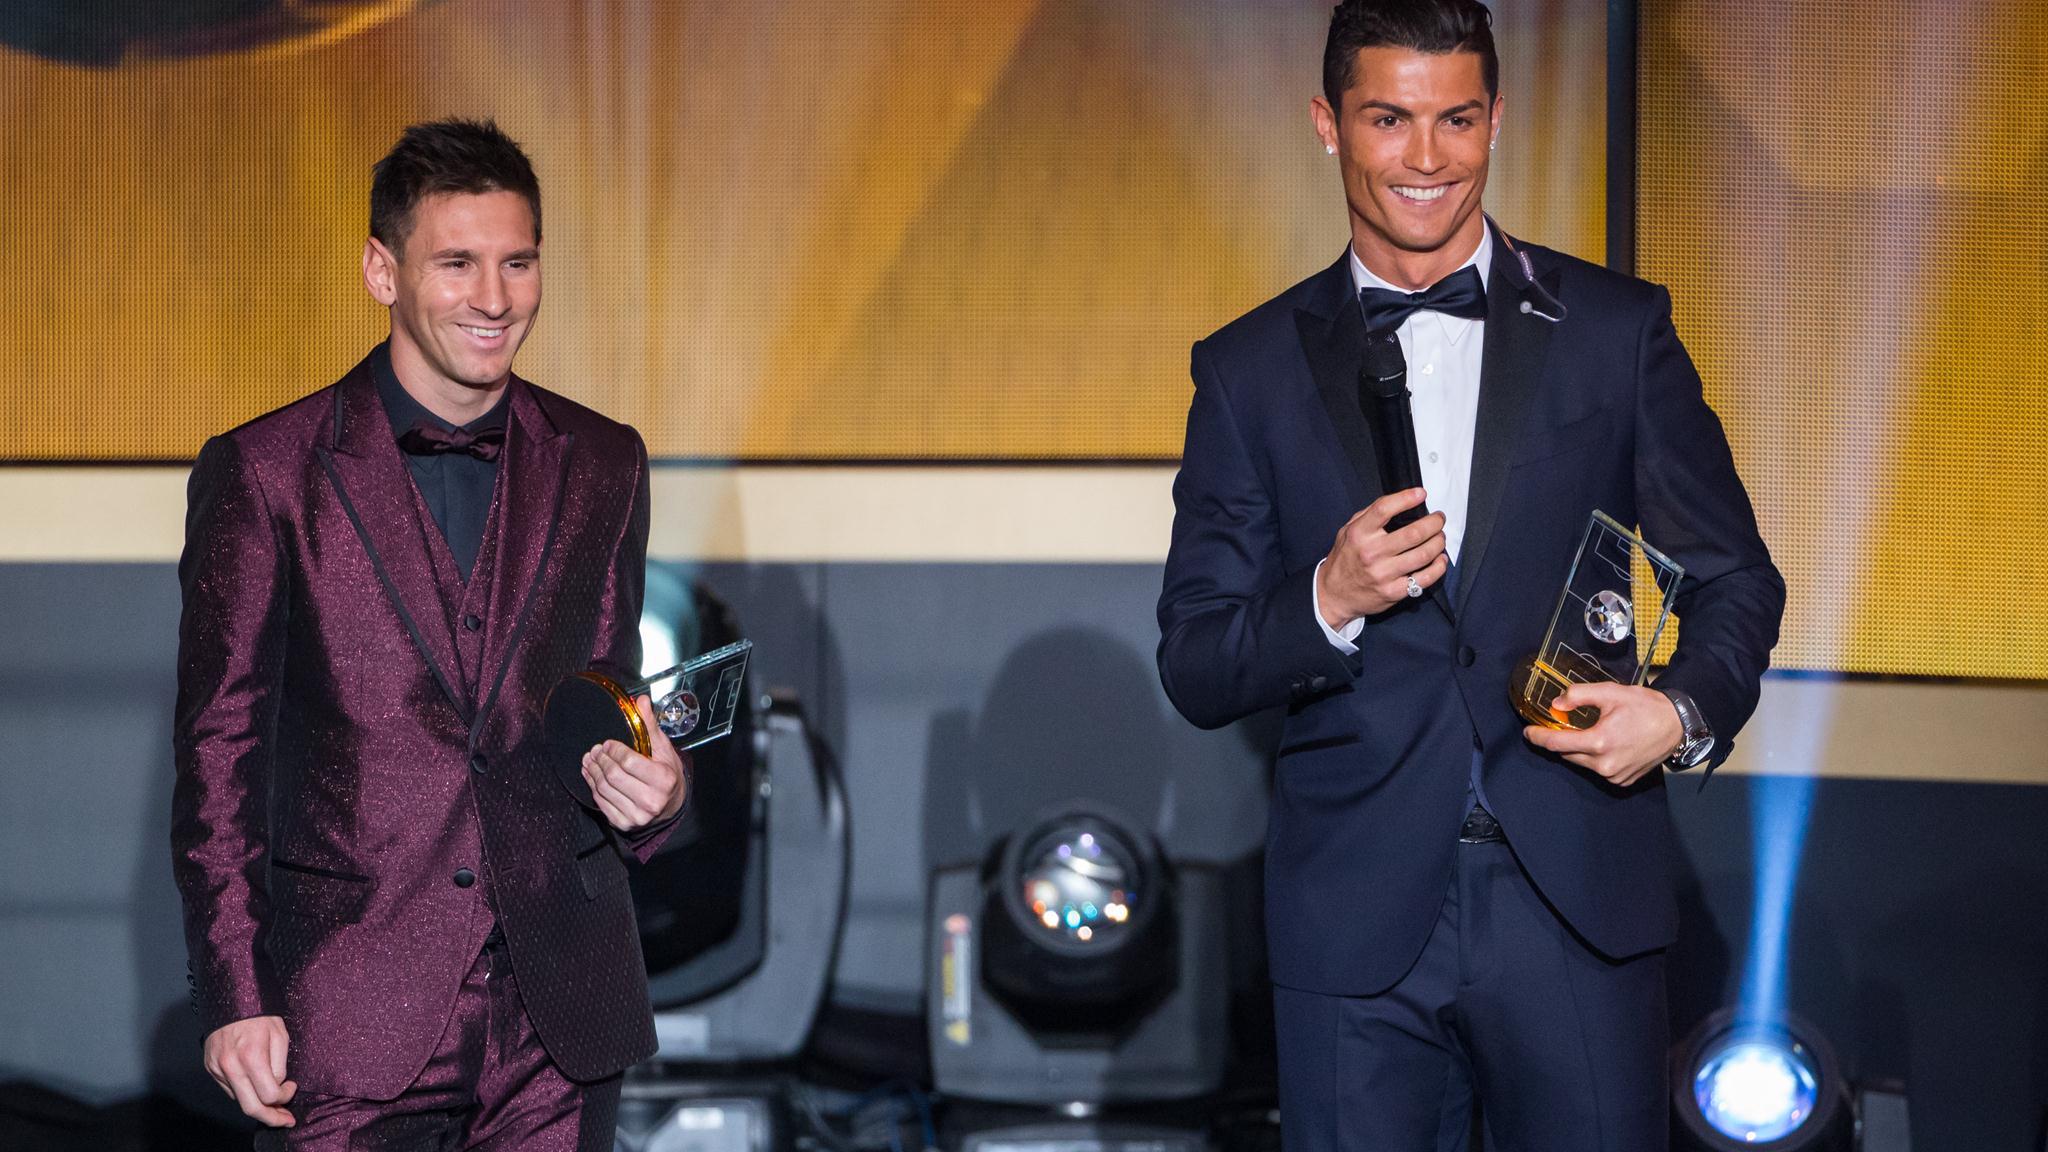 Lionel Messi and Cristiano Ronaldo smile during the FIFA Ballon d'Or